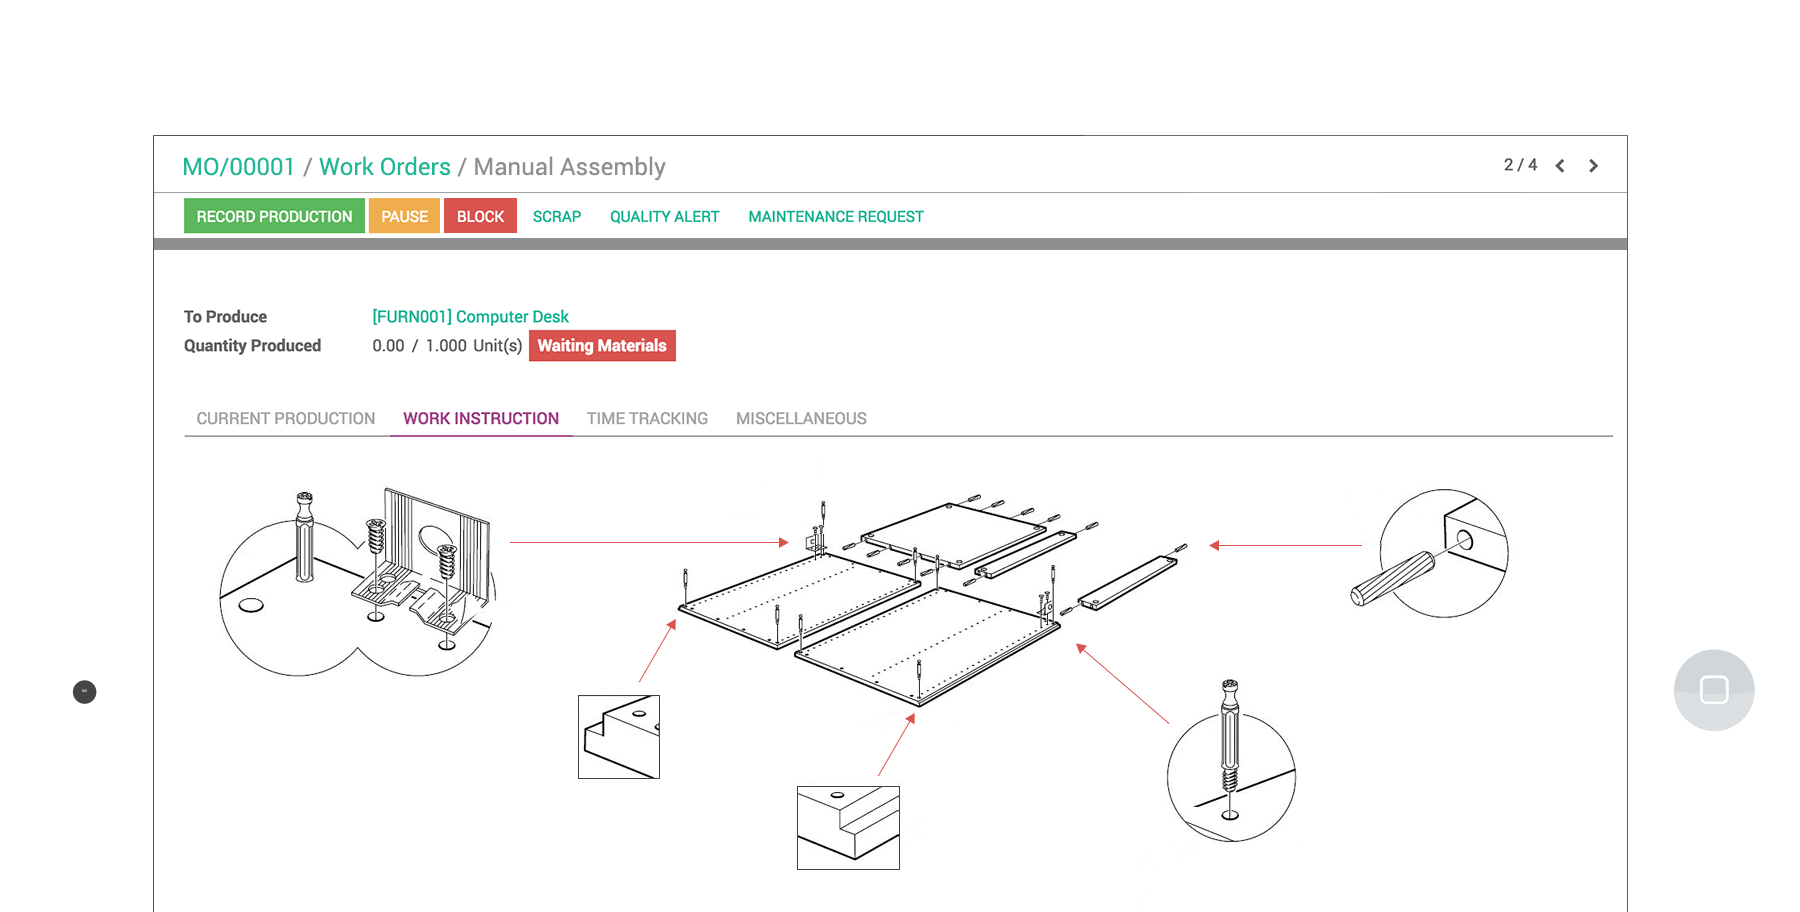 Interfaz en tableta de Fabricación de Odoo que muestra un ensamblado manual para una orden de trabajo